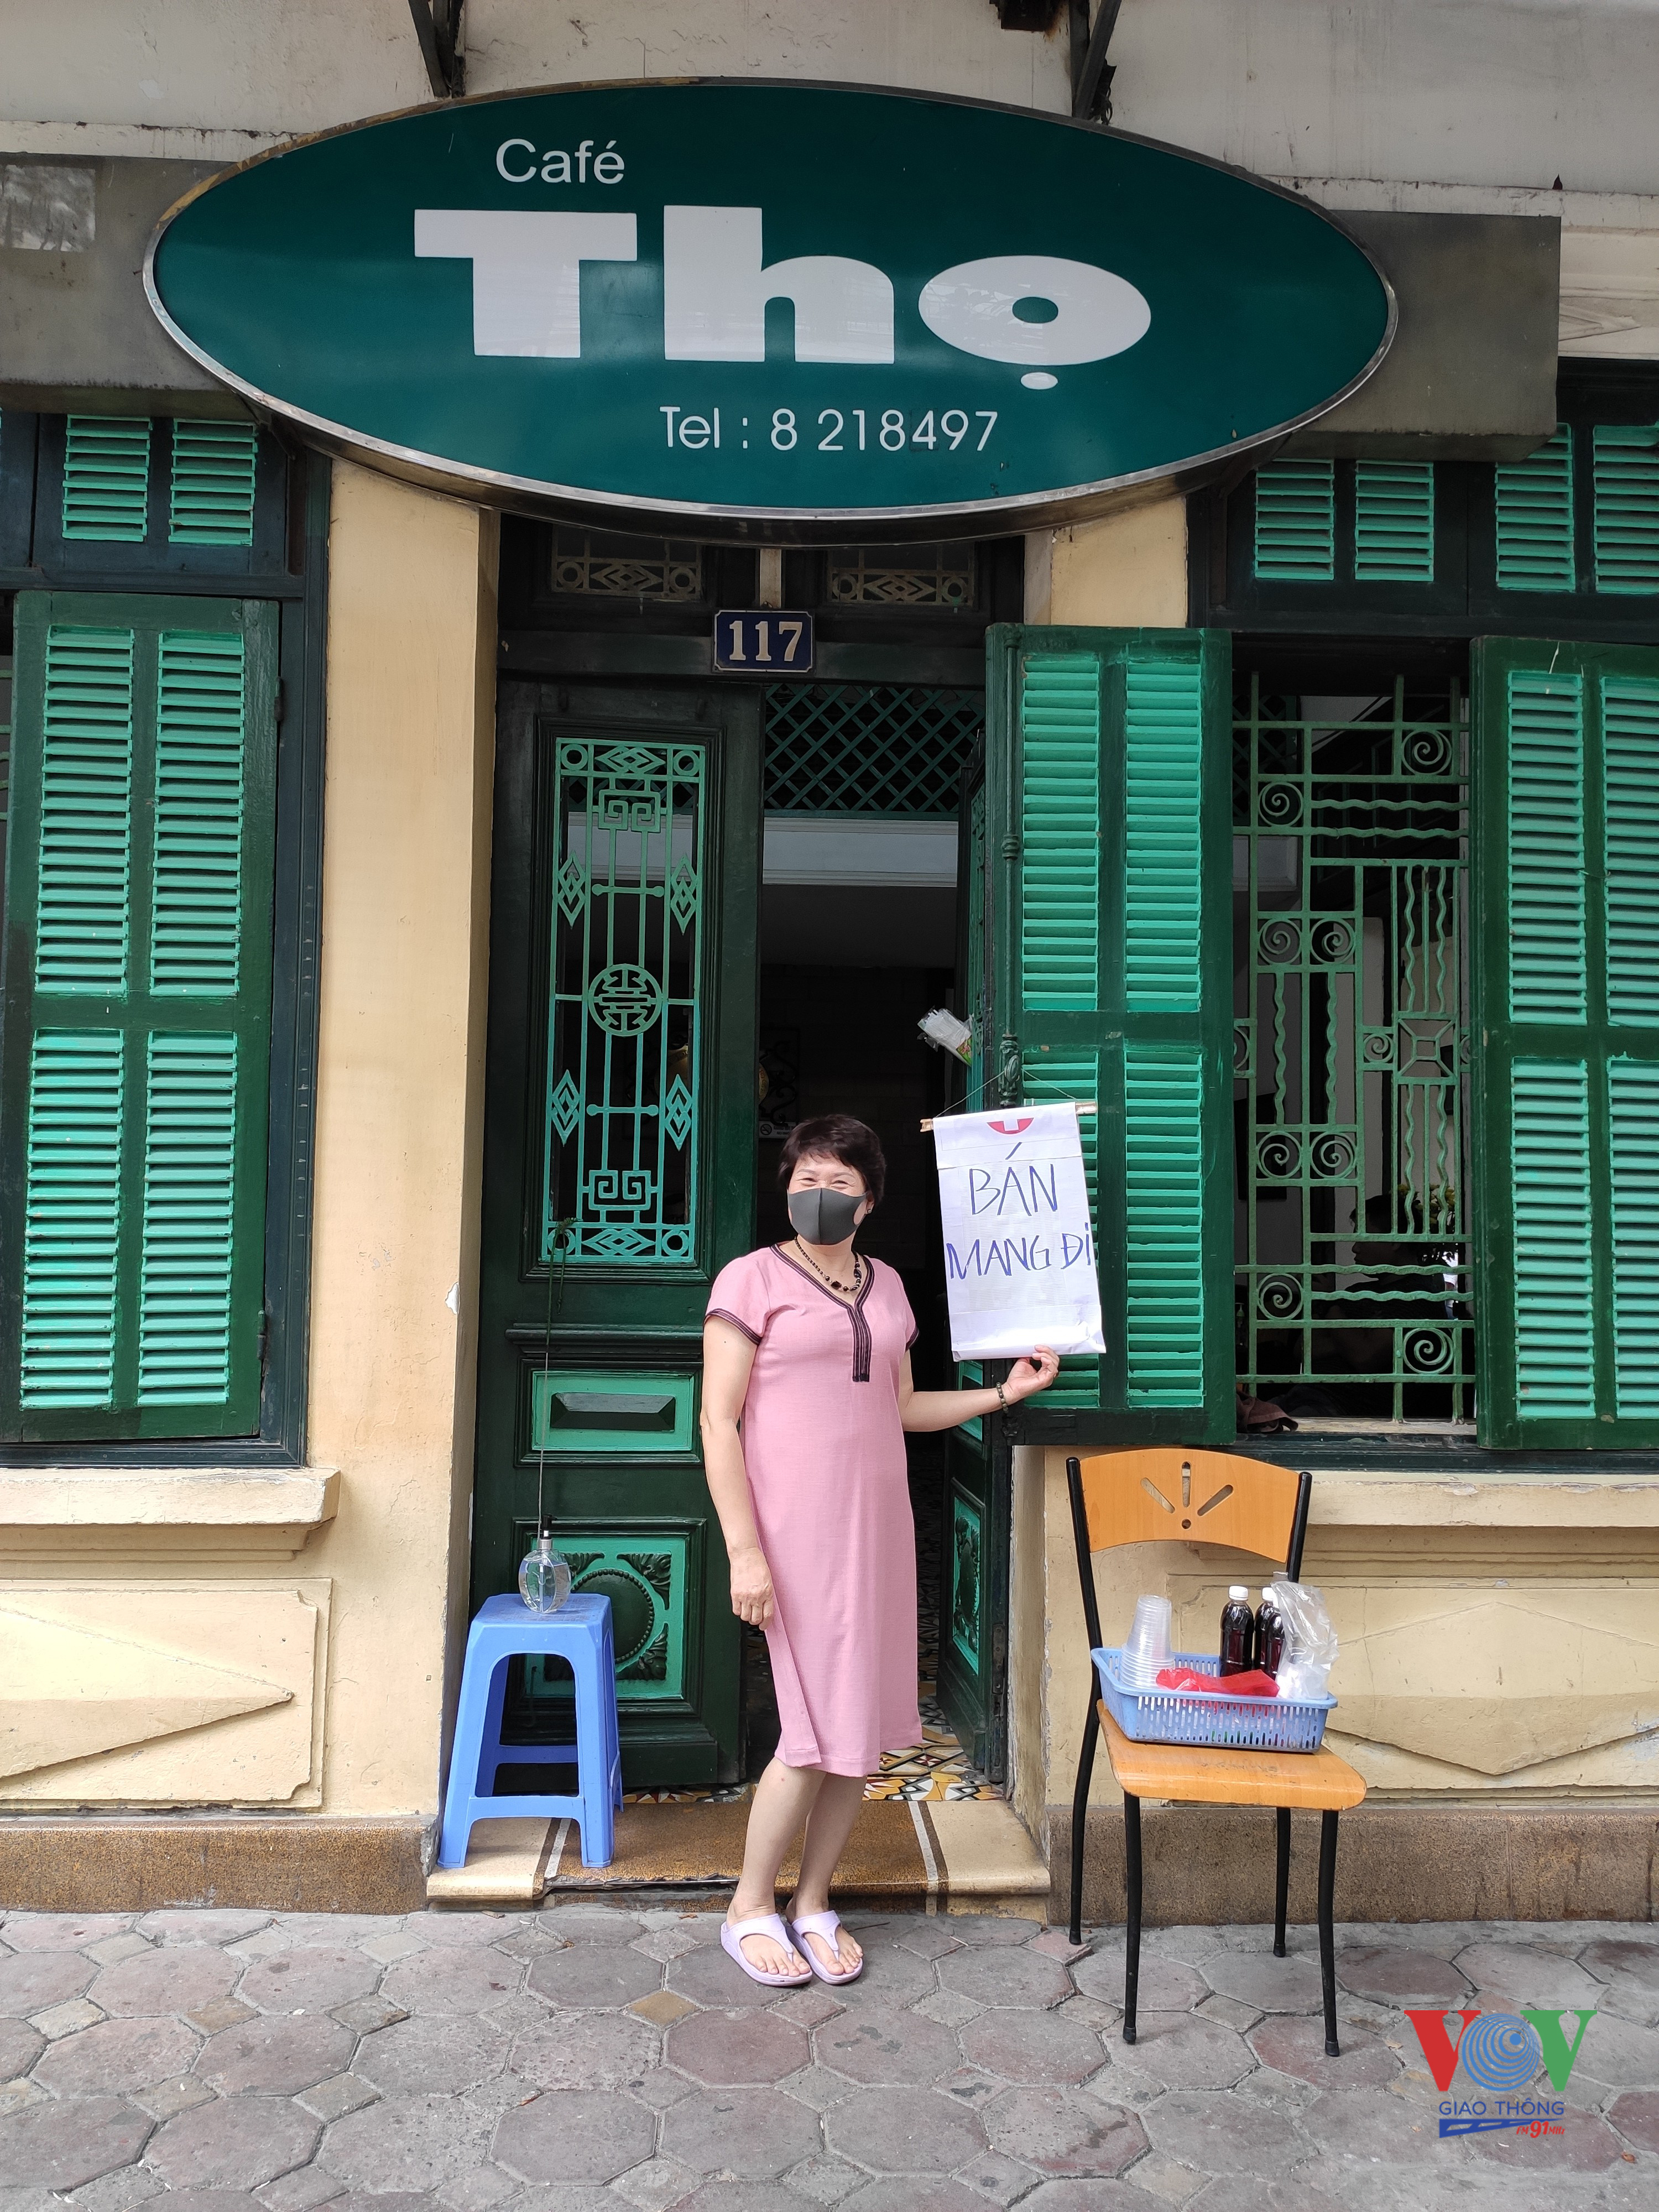 Ảnh 10: Quán café Thọ nổi tiếng trên phố Triệu Việt Vương chấp hành đúng quy định, áp hình hình thức “bán mang đi”, không phục vụ tại quán. 